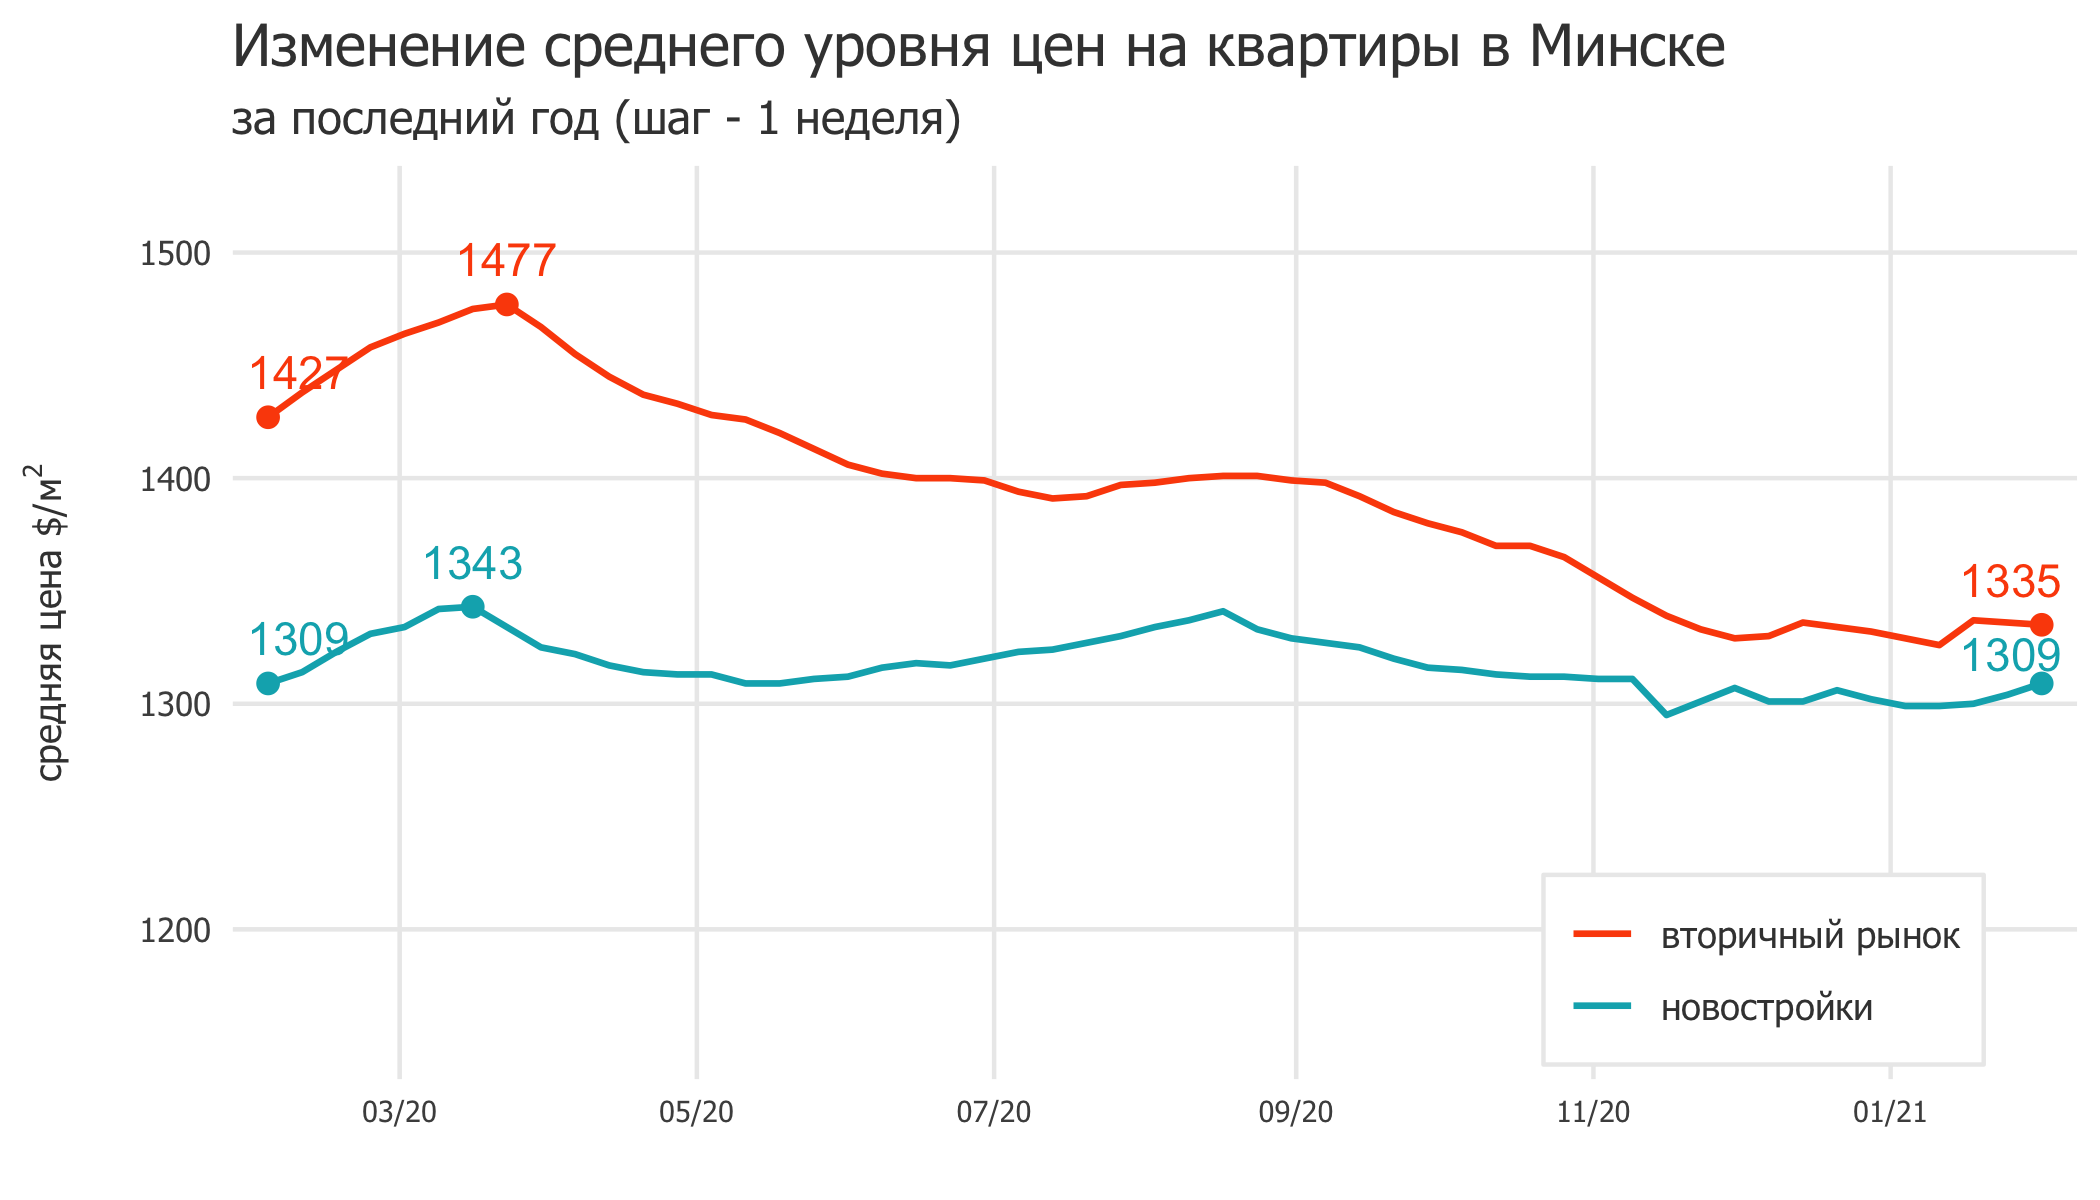 Мониторинг цен предложения квартир в Минске за 25 января — 1 февраля 2021 года